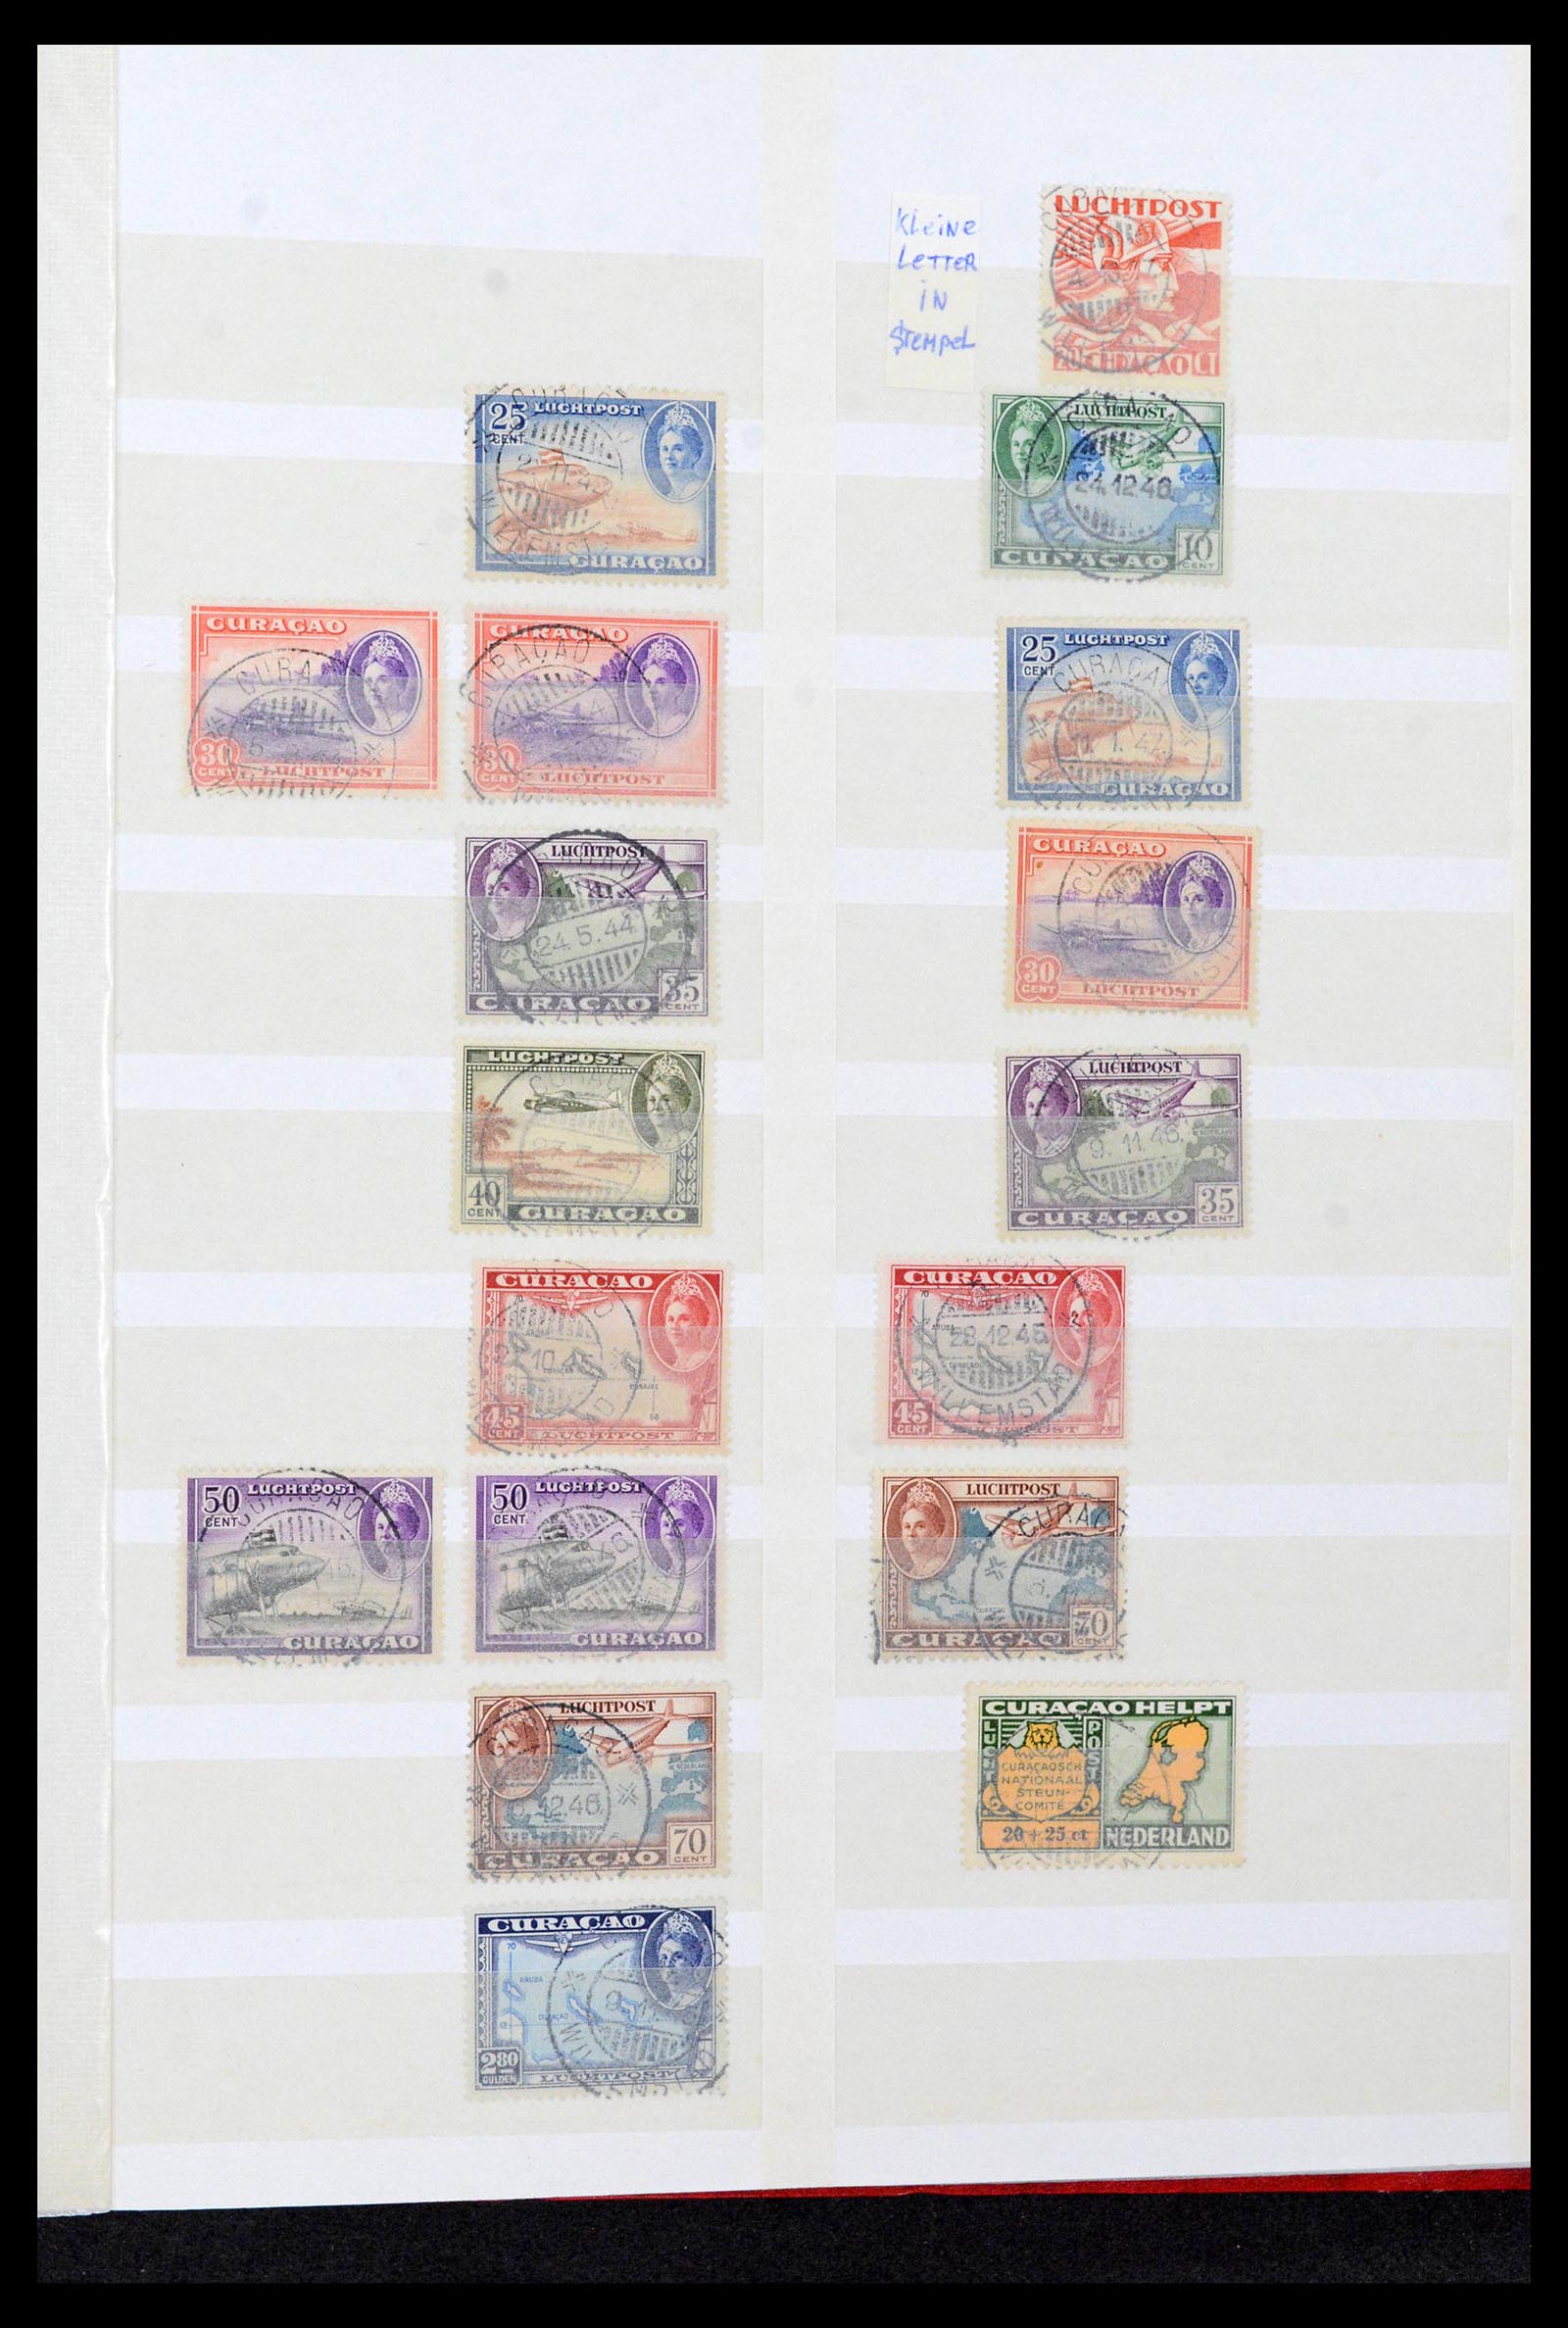 39541 0044 - Postzegelverzameling 39541 Curaçao/Antillen stempels 1873-1970.